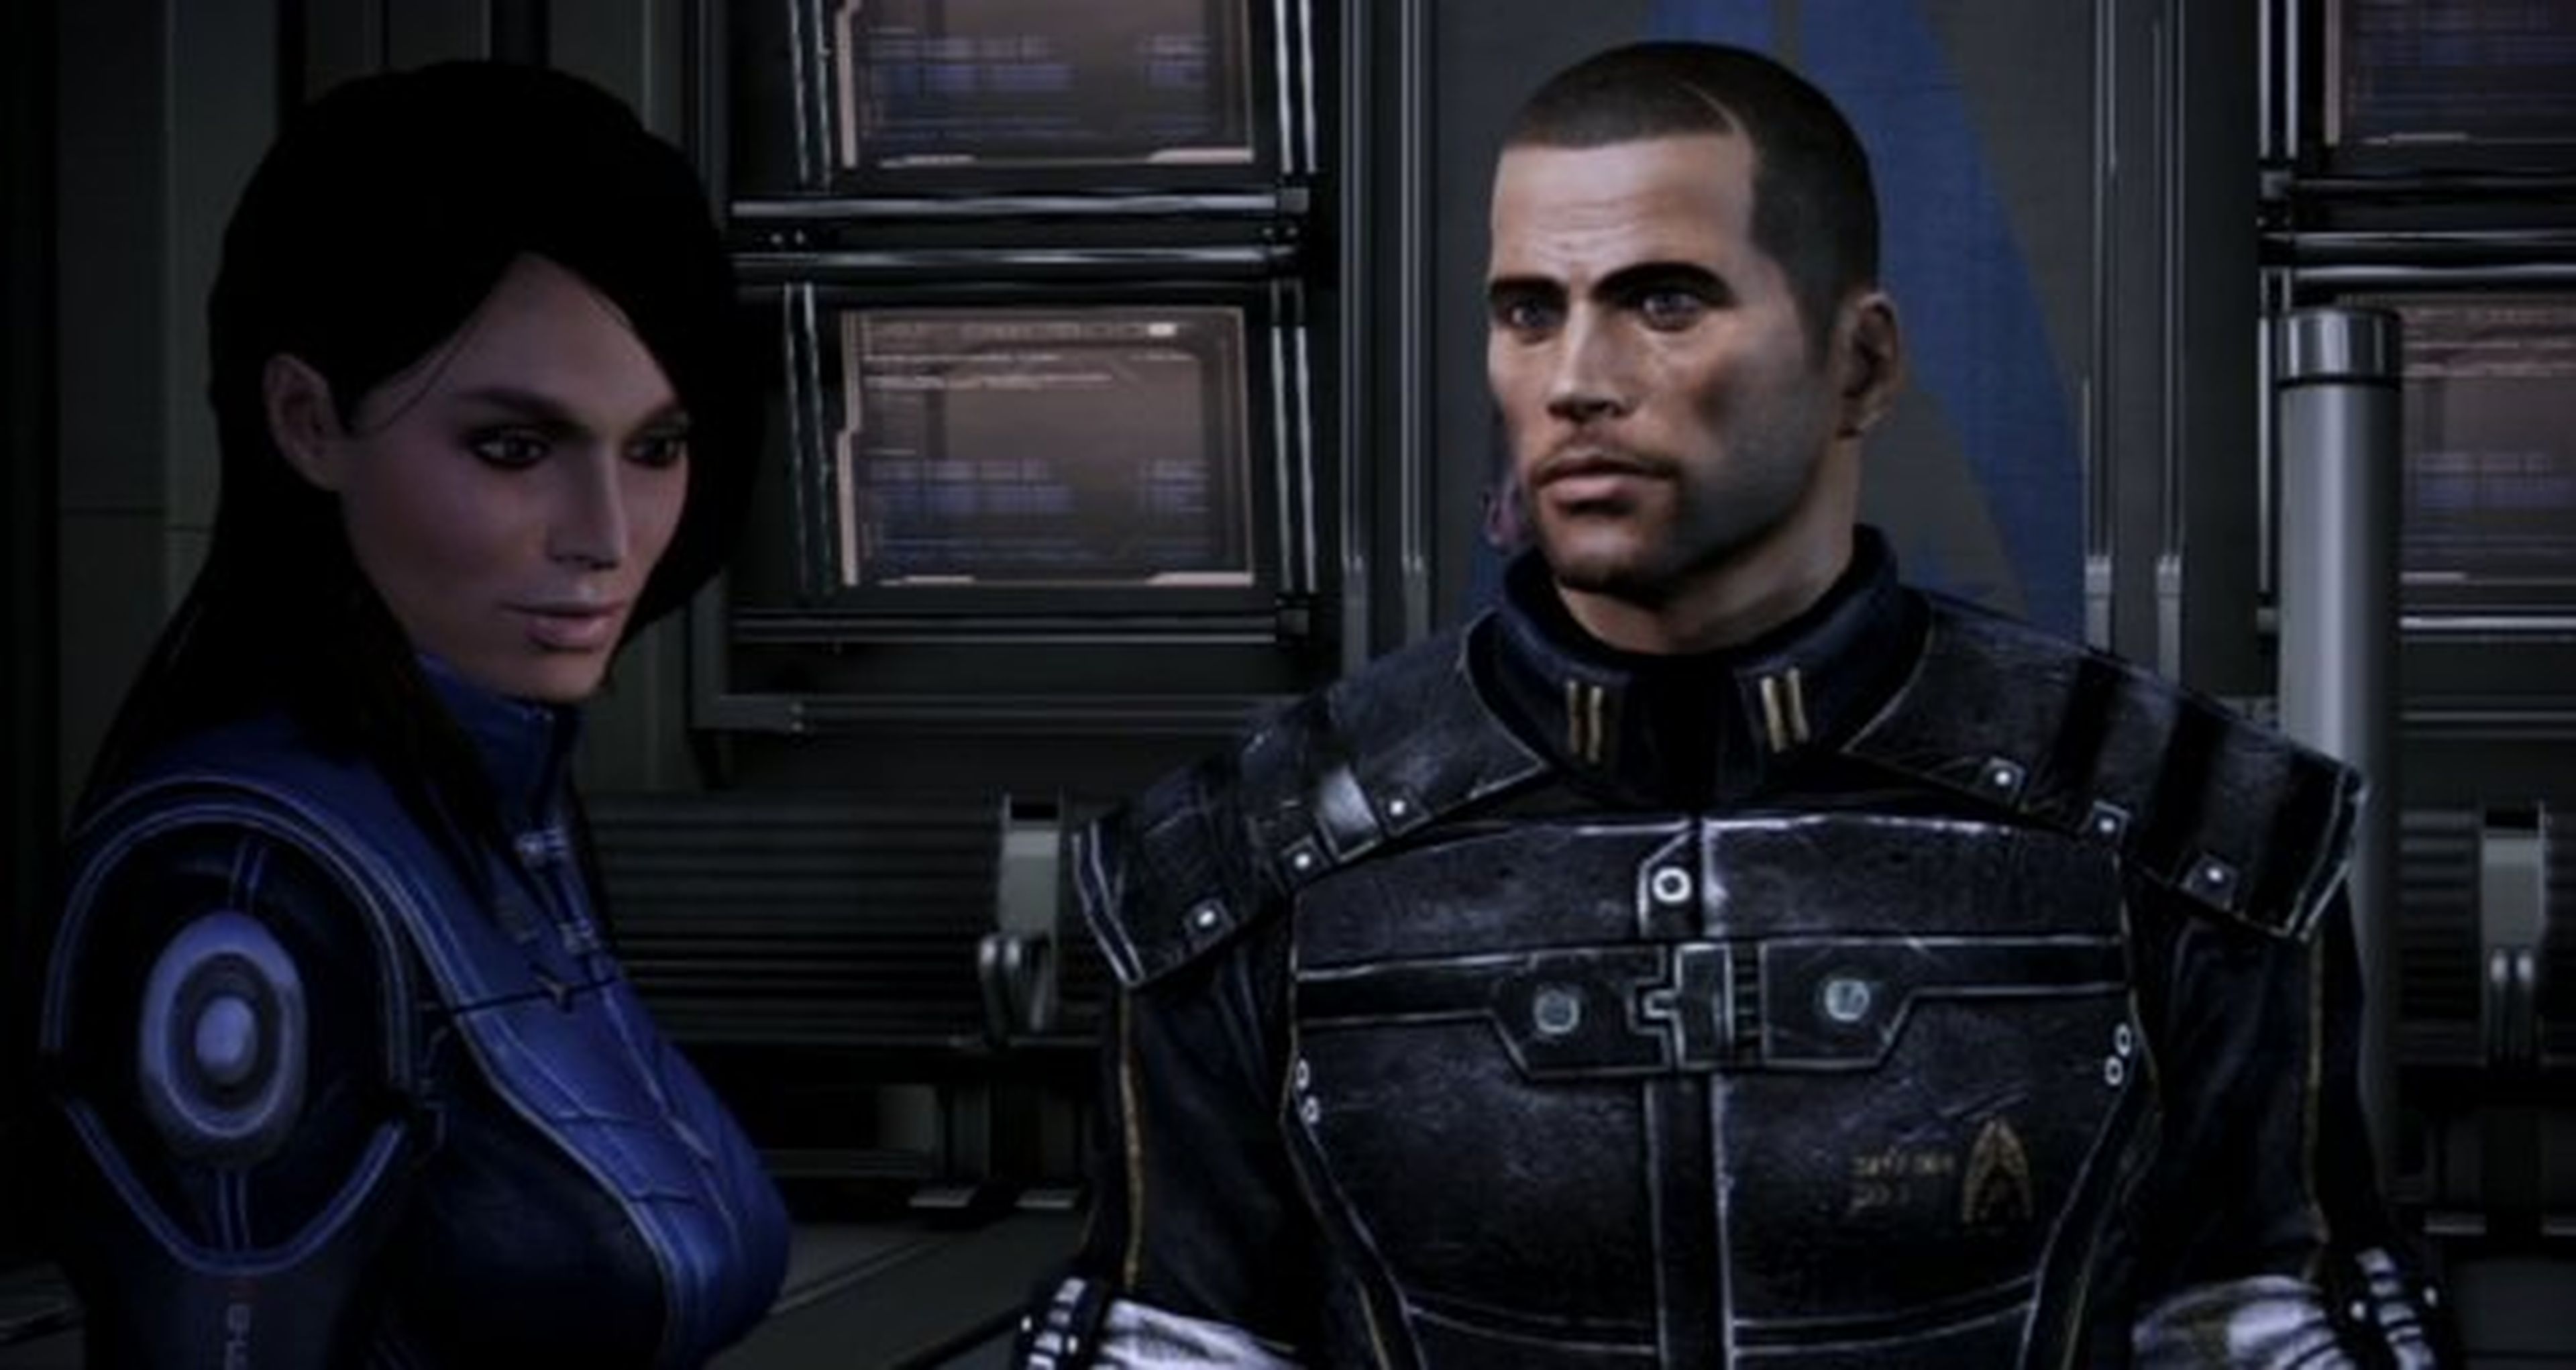 Bioware juega al despiste con Mass Effect y Wii U